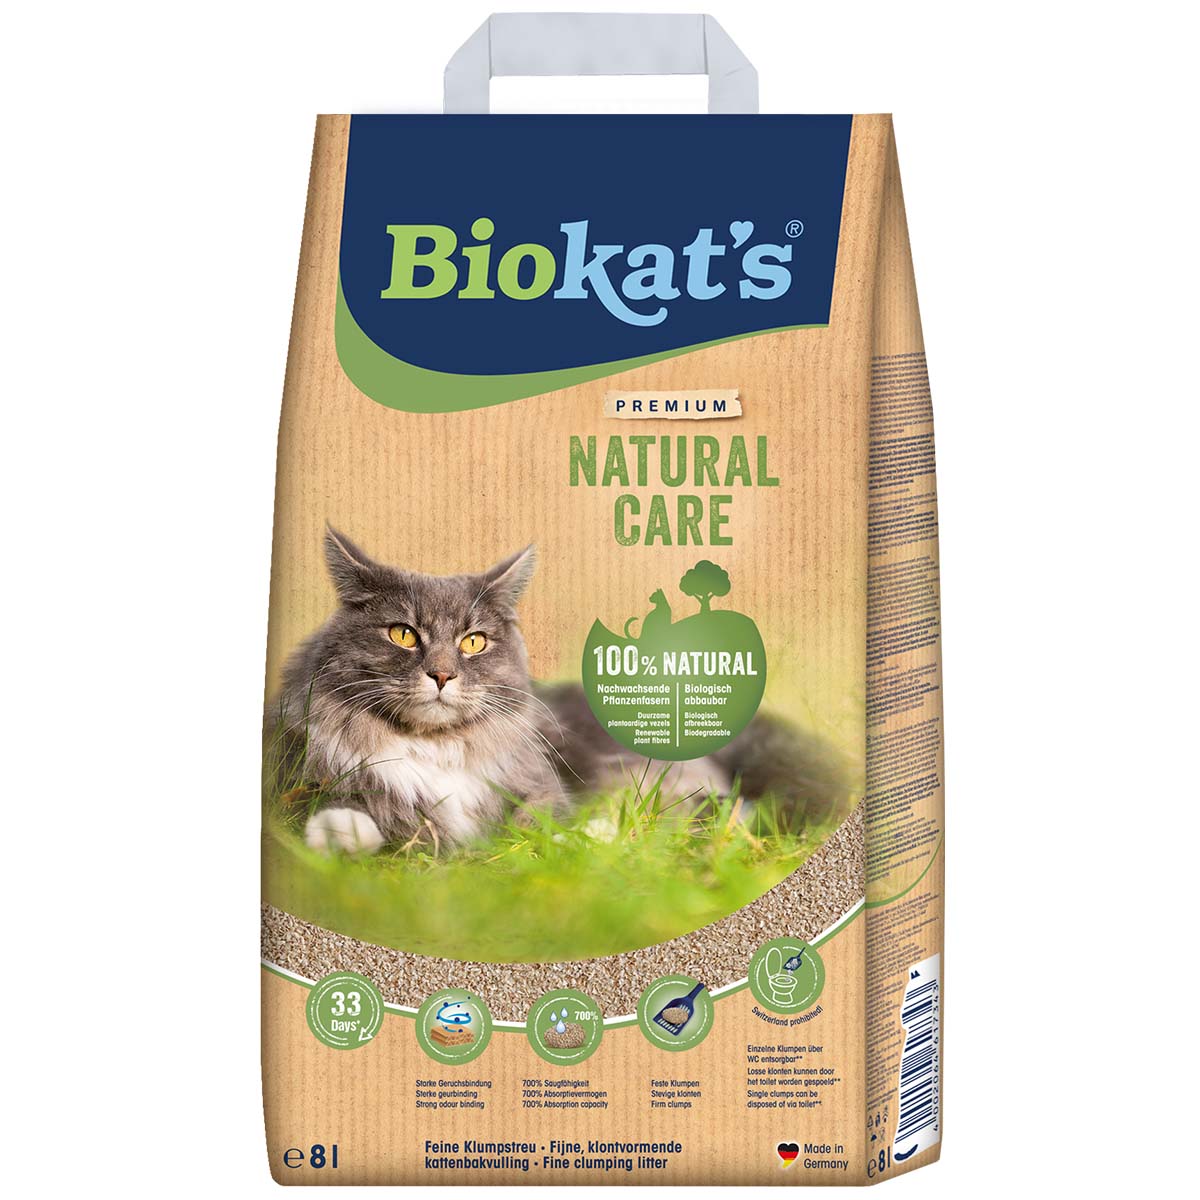 Biokat' Natural Care 8 L von BioKat's